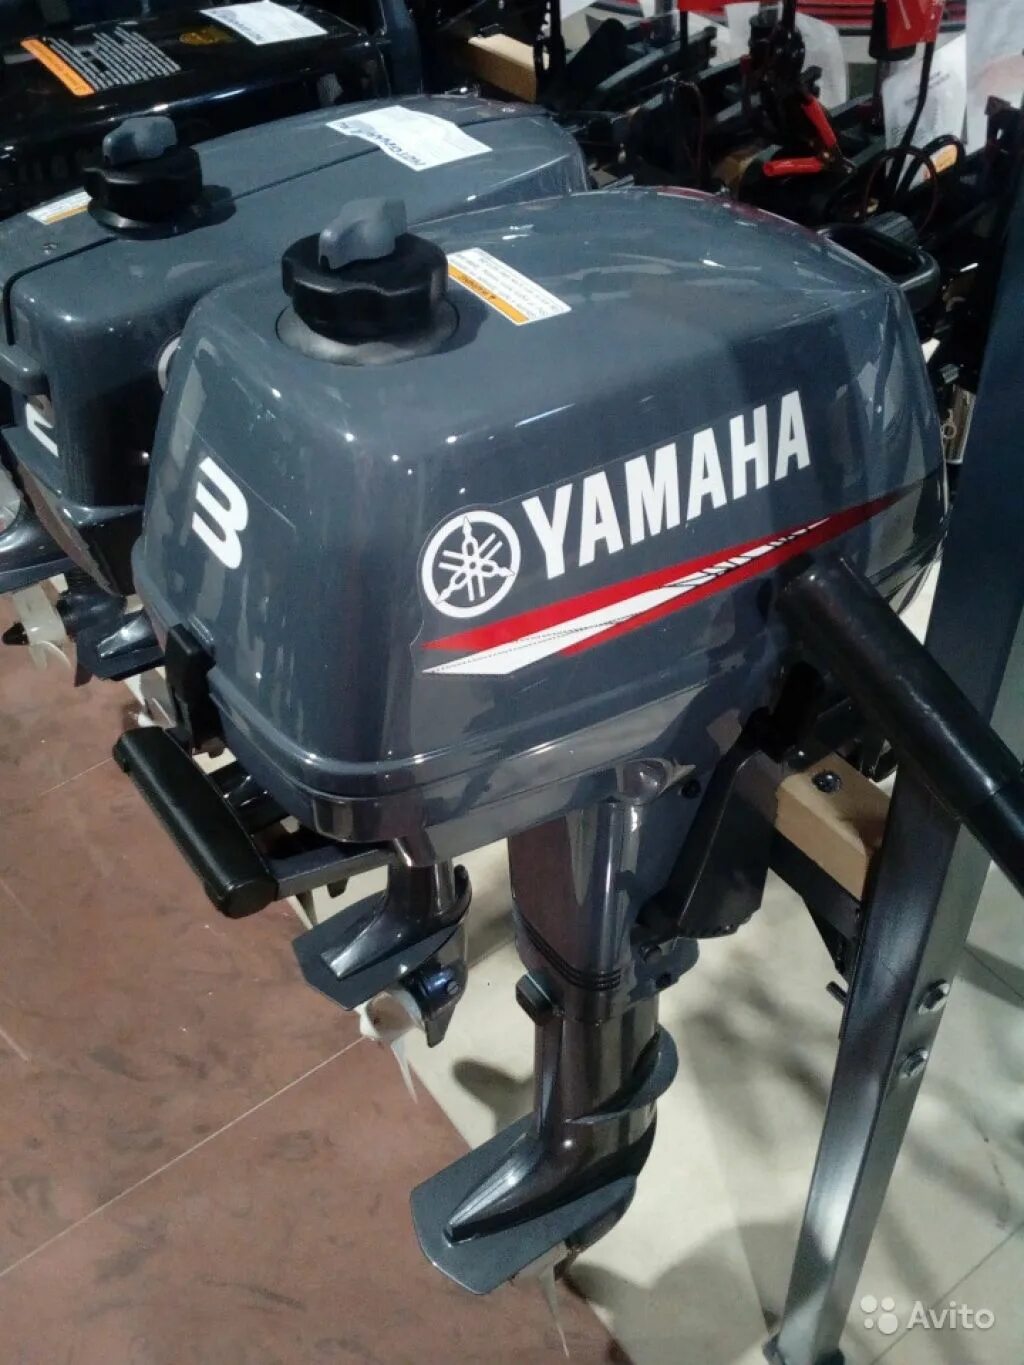 Лодочный мотор Yamaha 3. Лодочный мотор Yamaha 3amhs. Ямаха 3 BMHS. Лодочный мотор Ямаха 3 л.с.